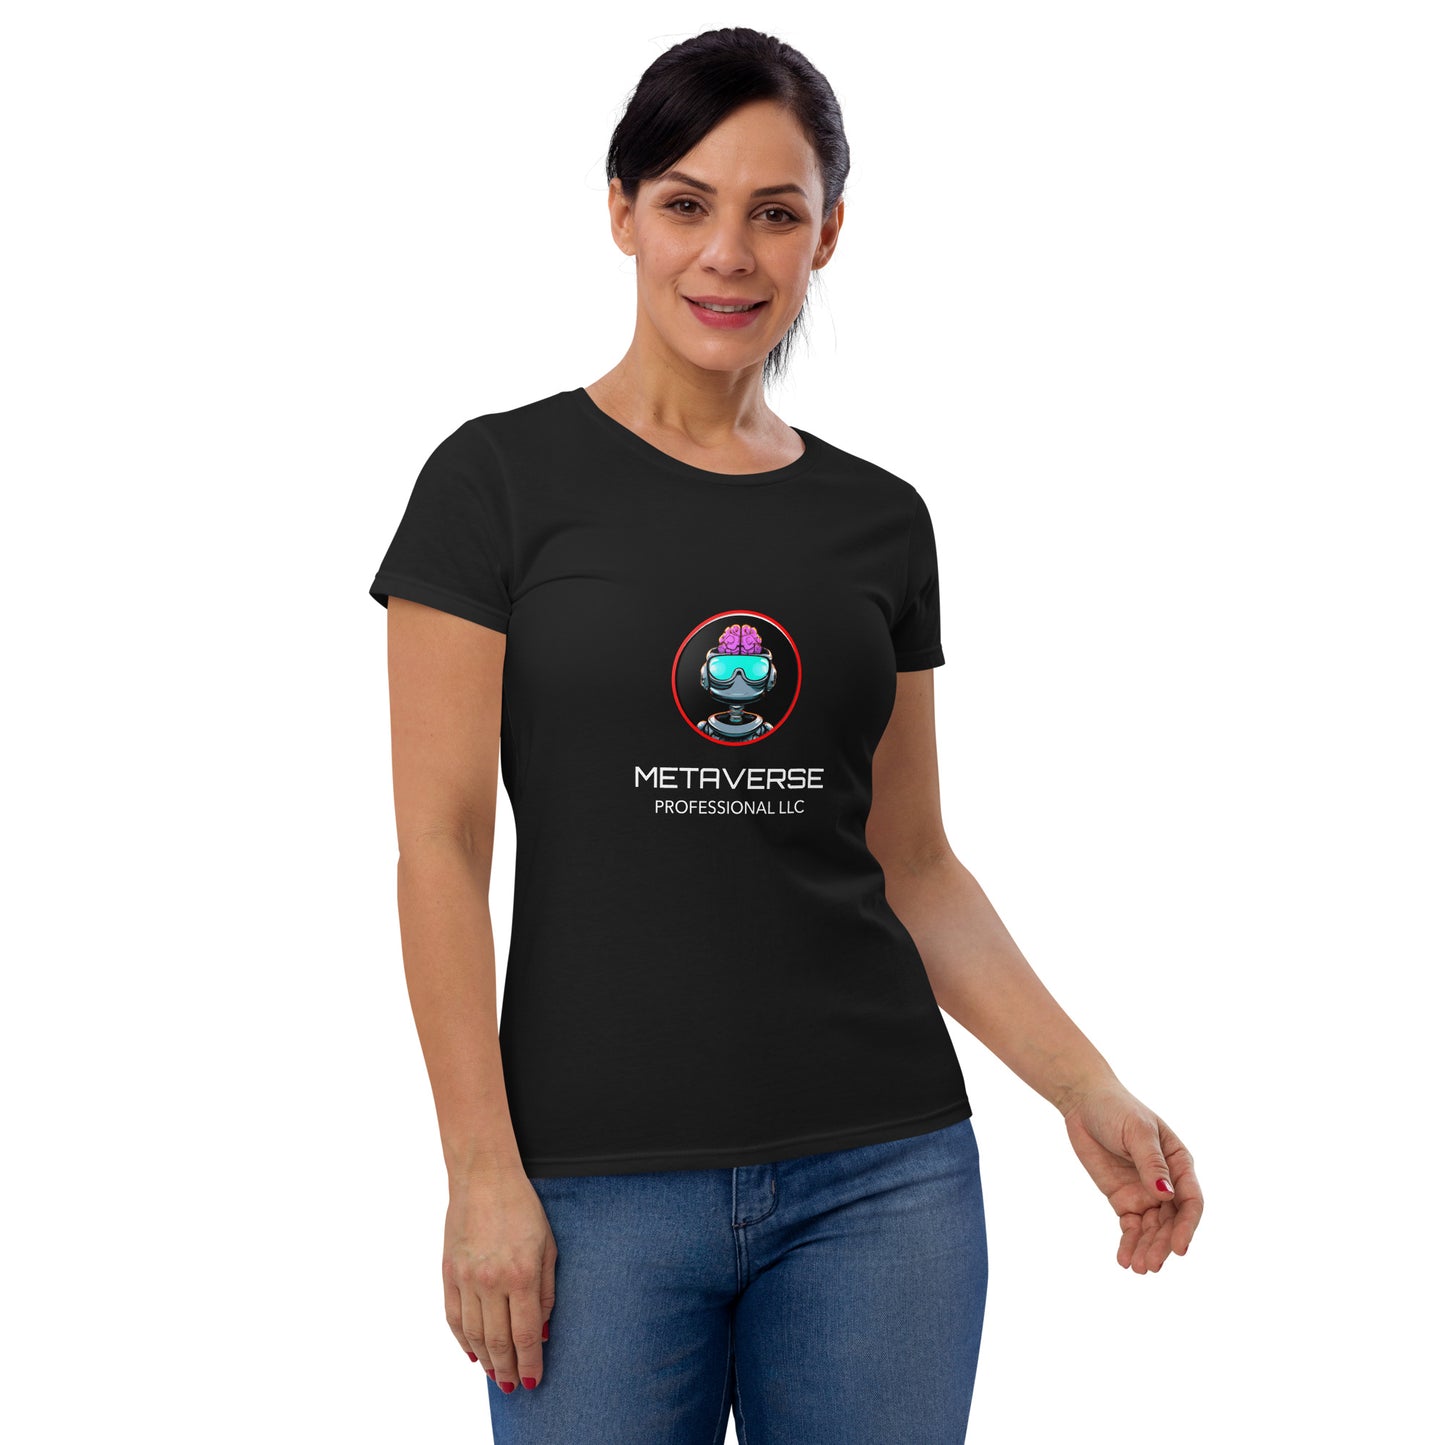 Metaverse Professional Tech Tee Women's short sleeve t-shirt